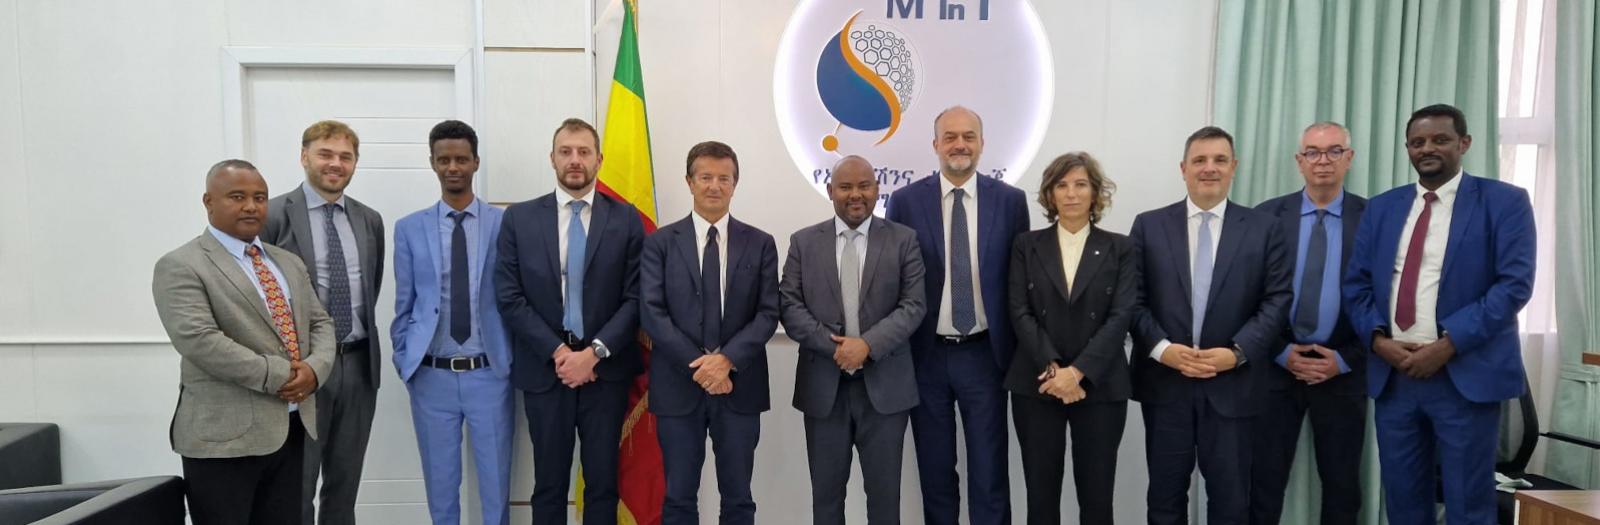 I rappresentanti della delegazione bergamasca in Etiopia con il Ministro per l’Innovazione e della Tecnologia, Belete Molla